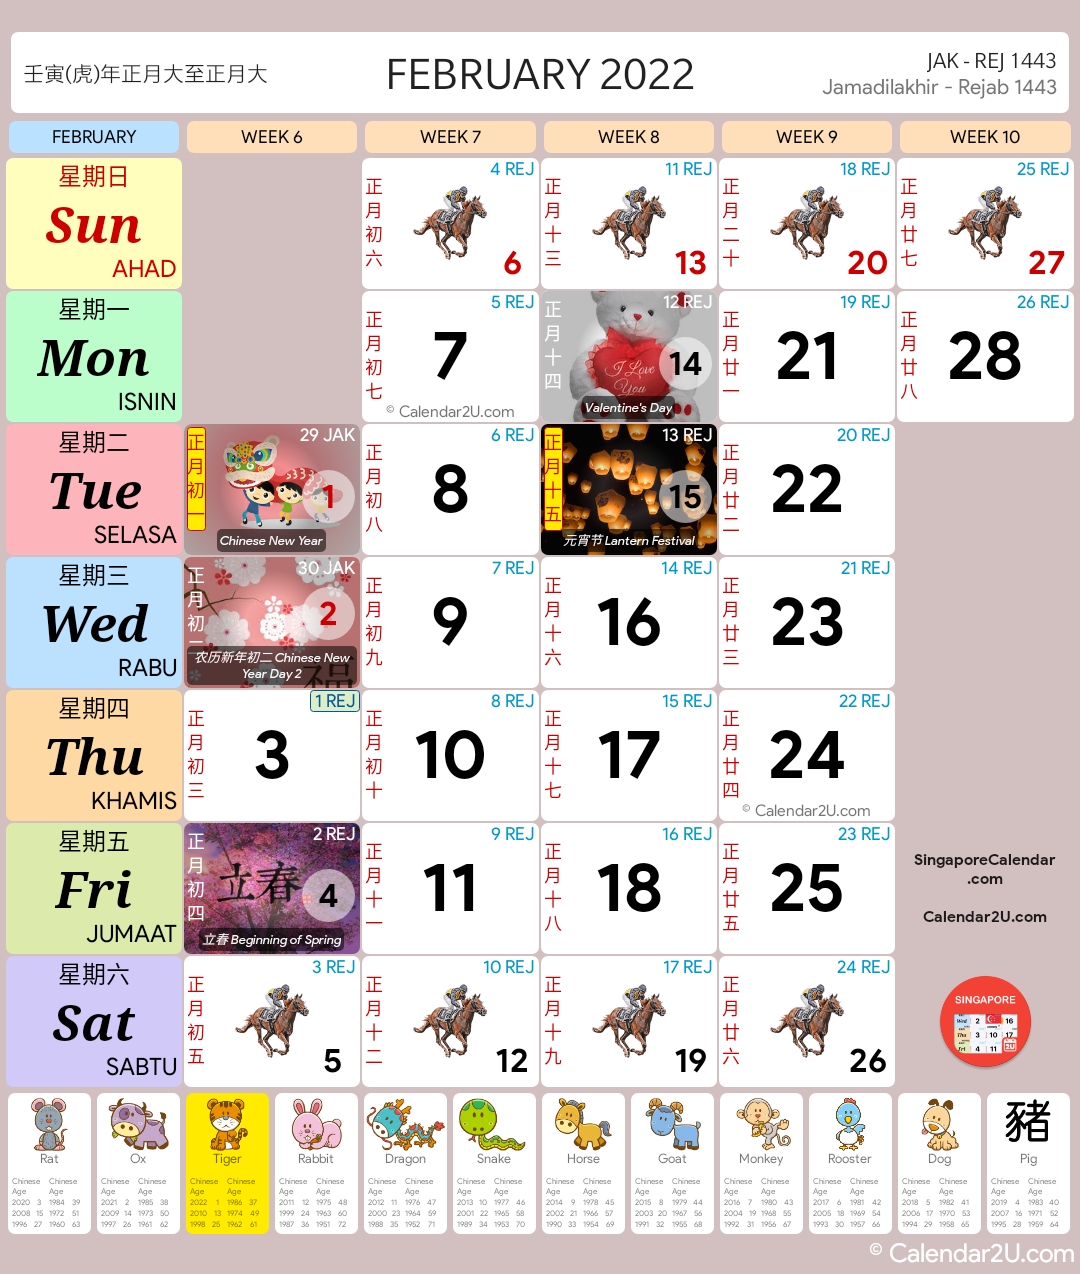 Singapore Calendar Feb 2022